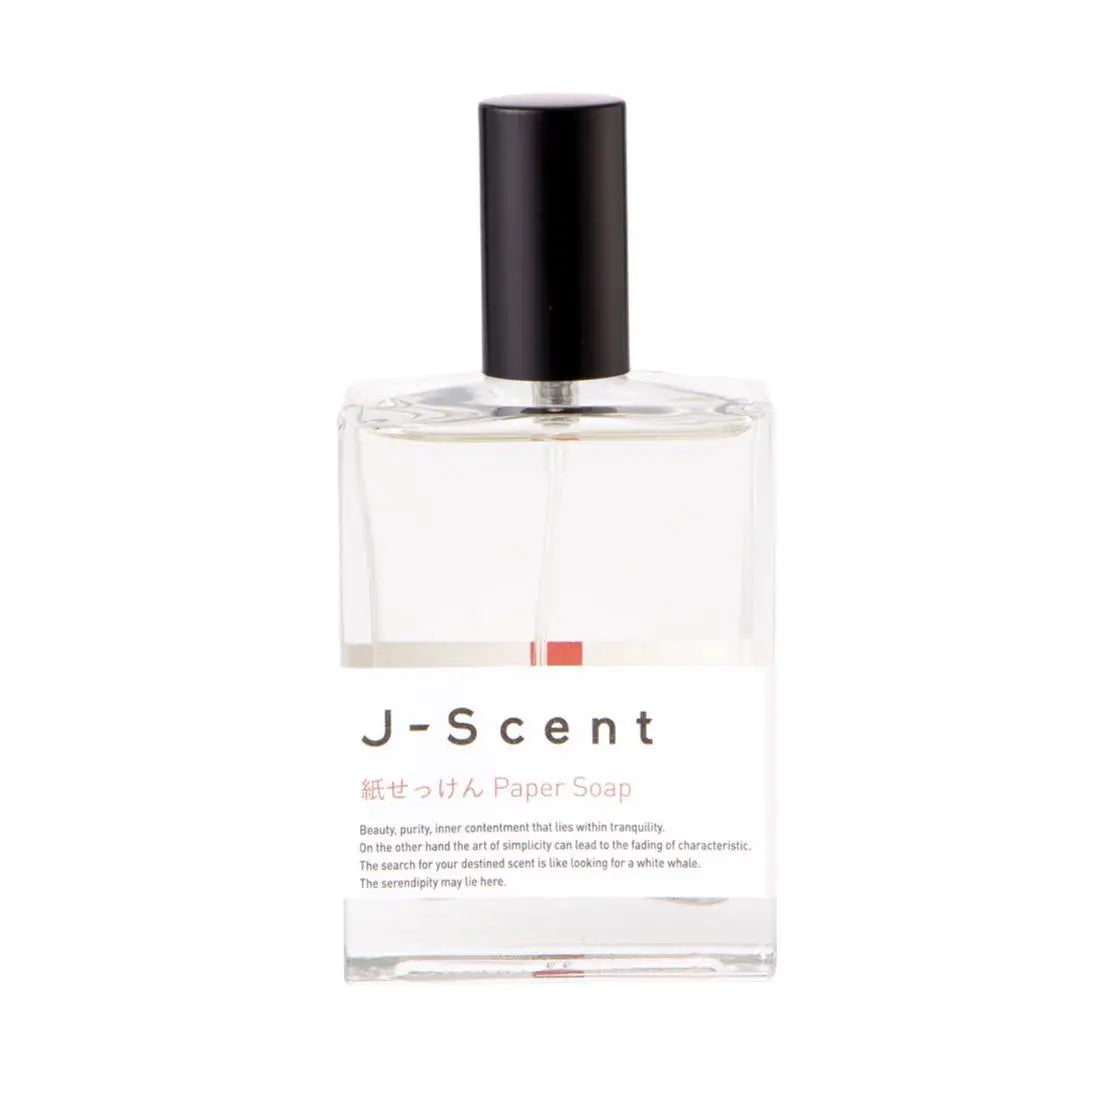 J-scent 纸皂 - 50 毫升